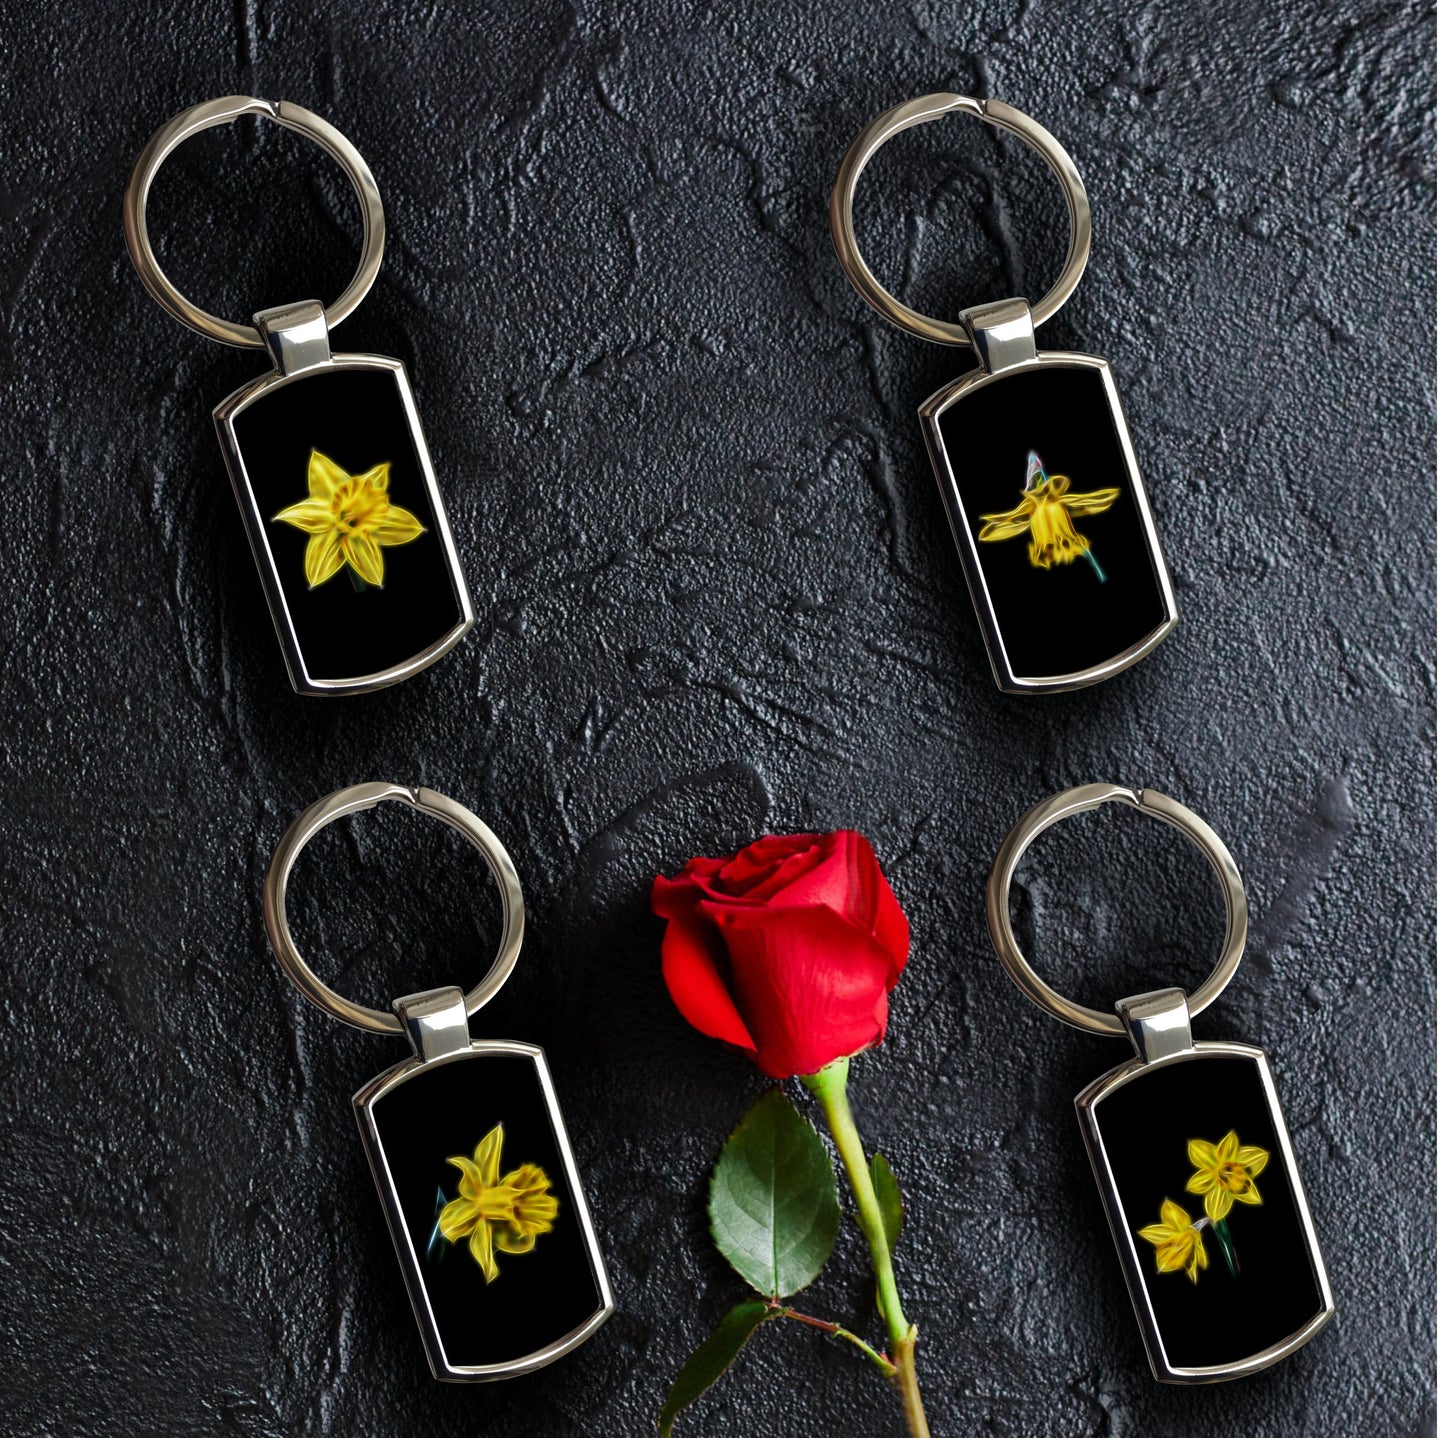 Daffodil Keychain with Fractal Art Design.